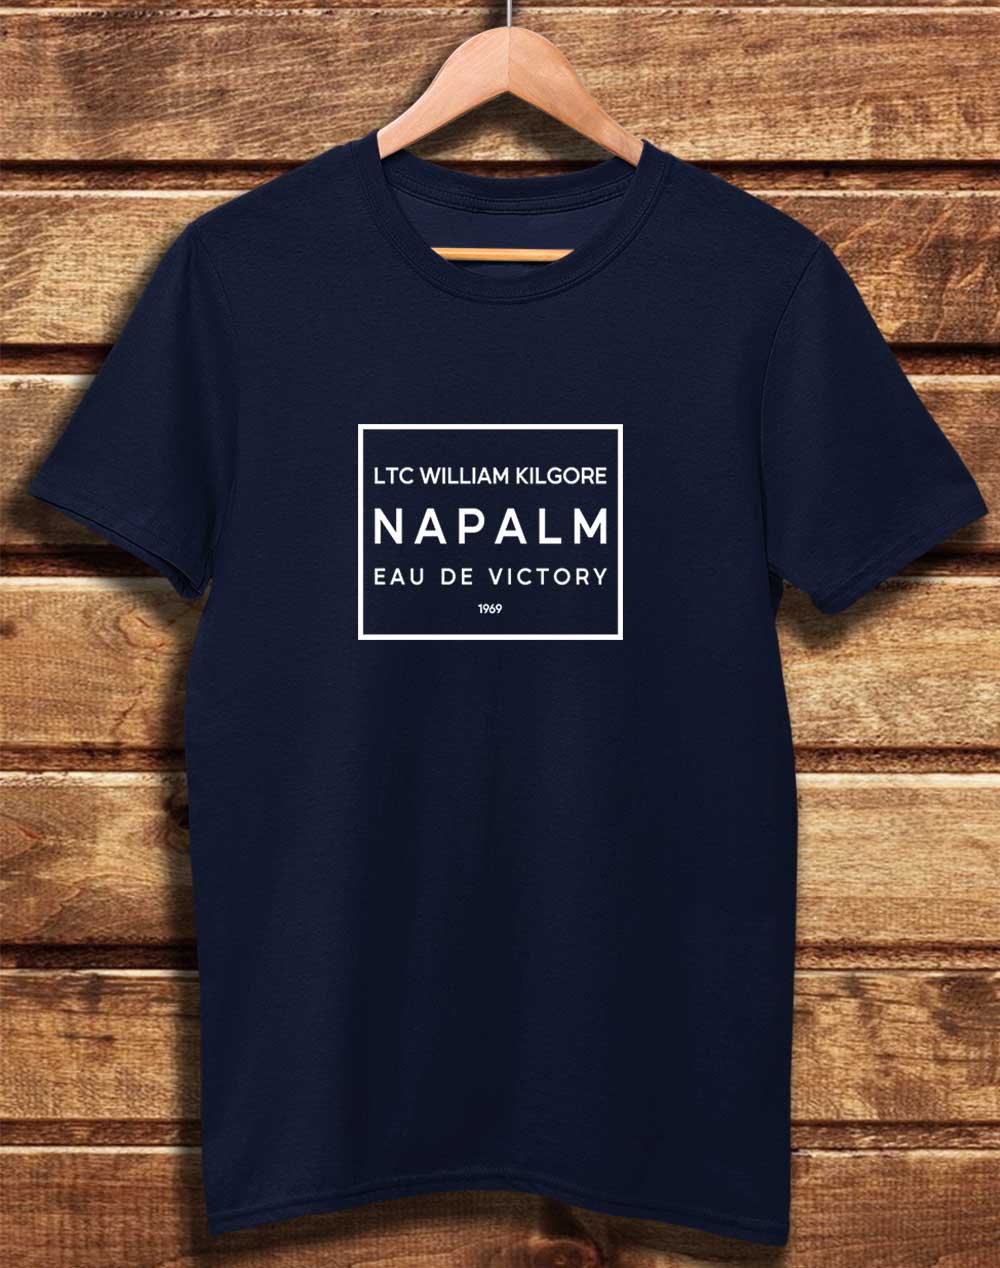 Navy - DELUXE Kilgore's Napalm Eau De Victory 1969 Organic Cotton T-Shirt